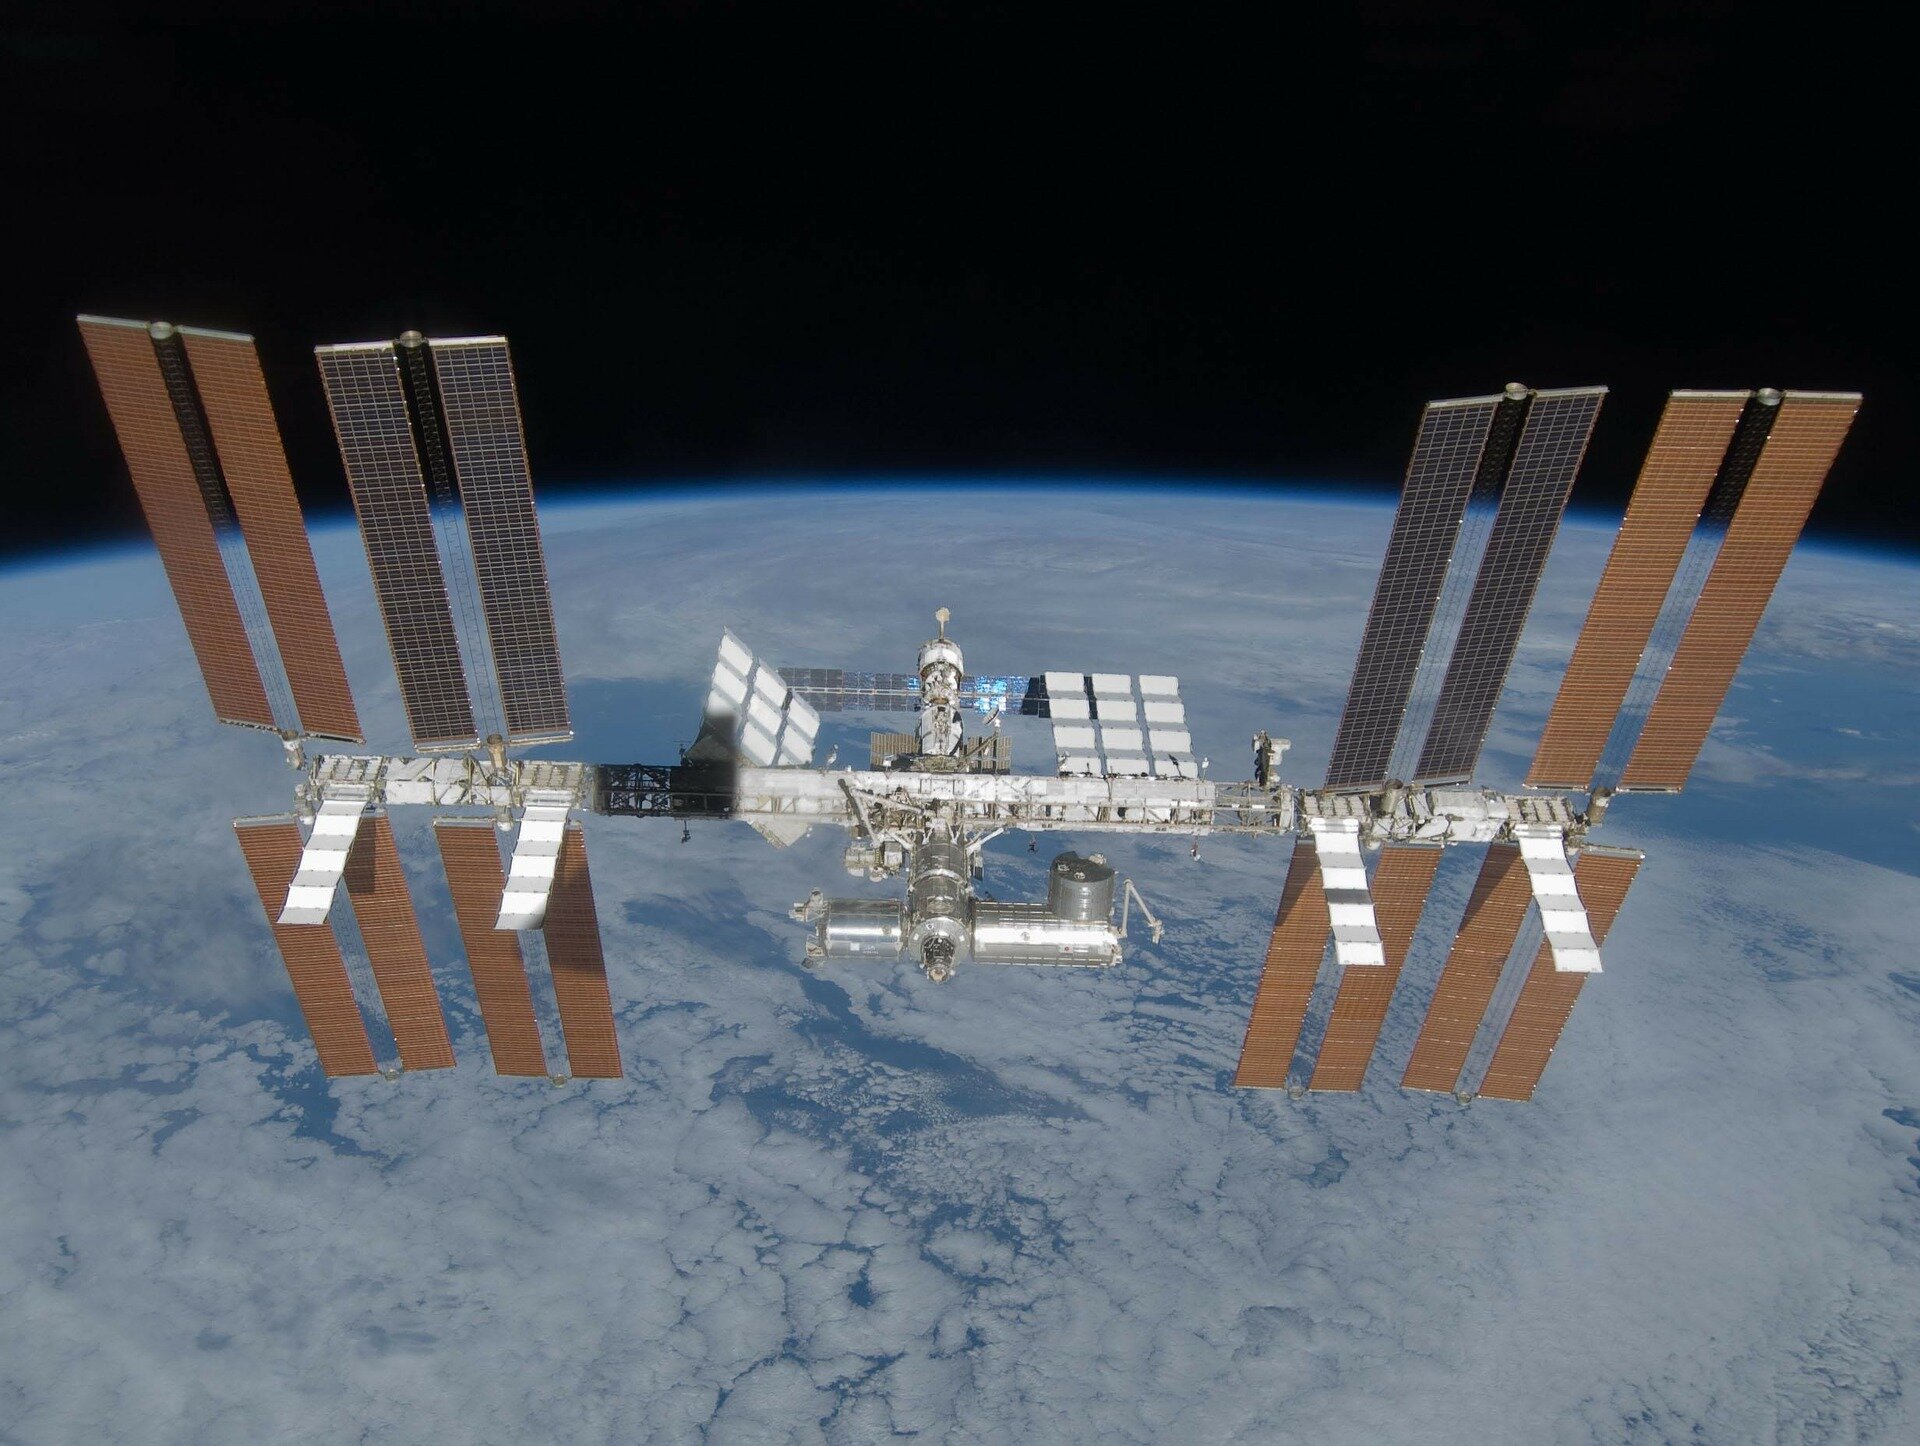 Na zdjęciu jest międzynarodowa stacja kosmiczna. To ogromna konstrukcja, której korpus złożony jest z wielu cylindrycznych modułów i długiej szyny, do której przyczepione są skrzydła z baterii słonecznych. Po prawej i po lewej stronie stacji są po dwie pary pionowych skrzydeł z bateriami słonecznymi powyżej szyny i po dwie pary poniżej szyny. W tle stacji kosmicznej widoczny jest fragment kuli ziemskiej, pokrytej chmurami.